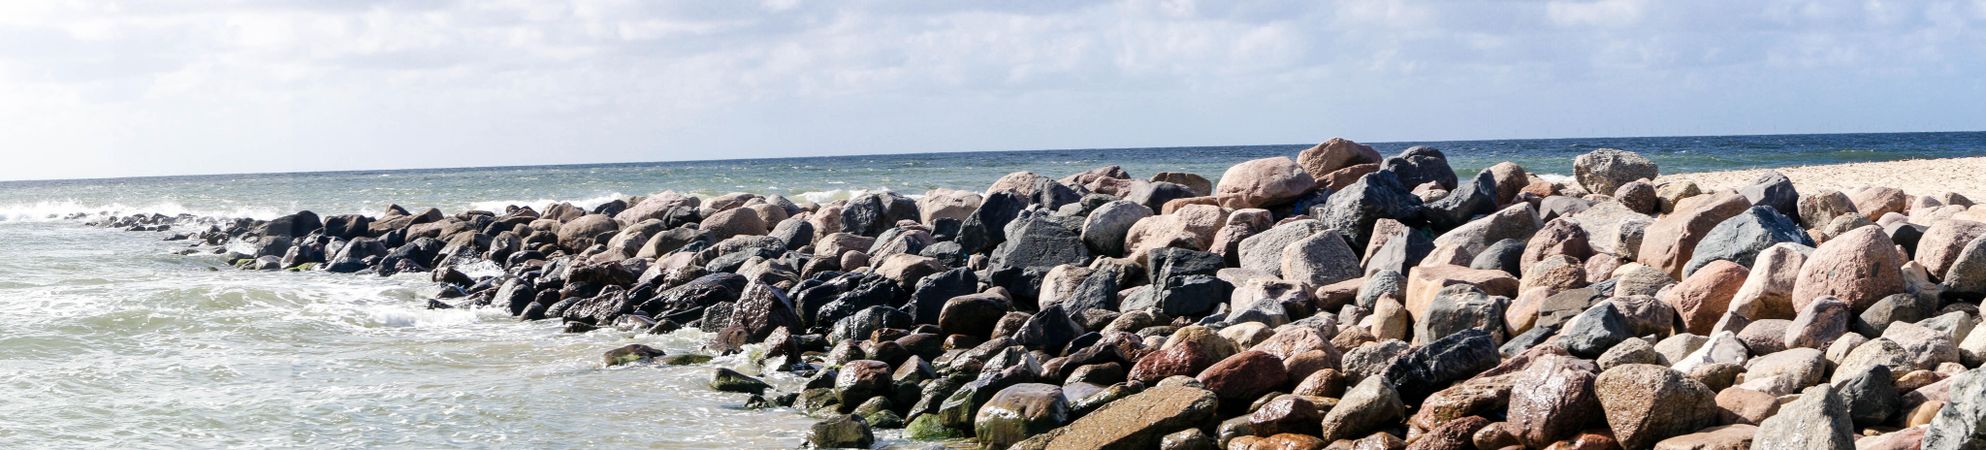 Rock wall in the water on seashore in Blavand, Denmark